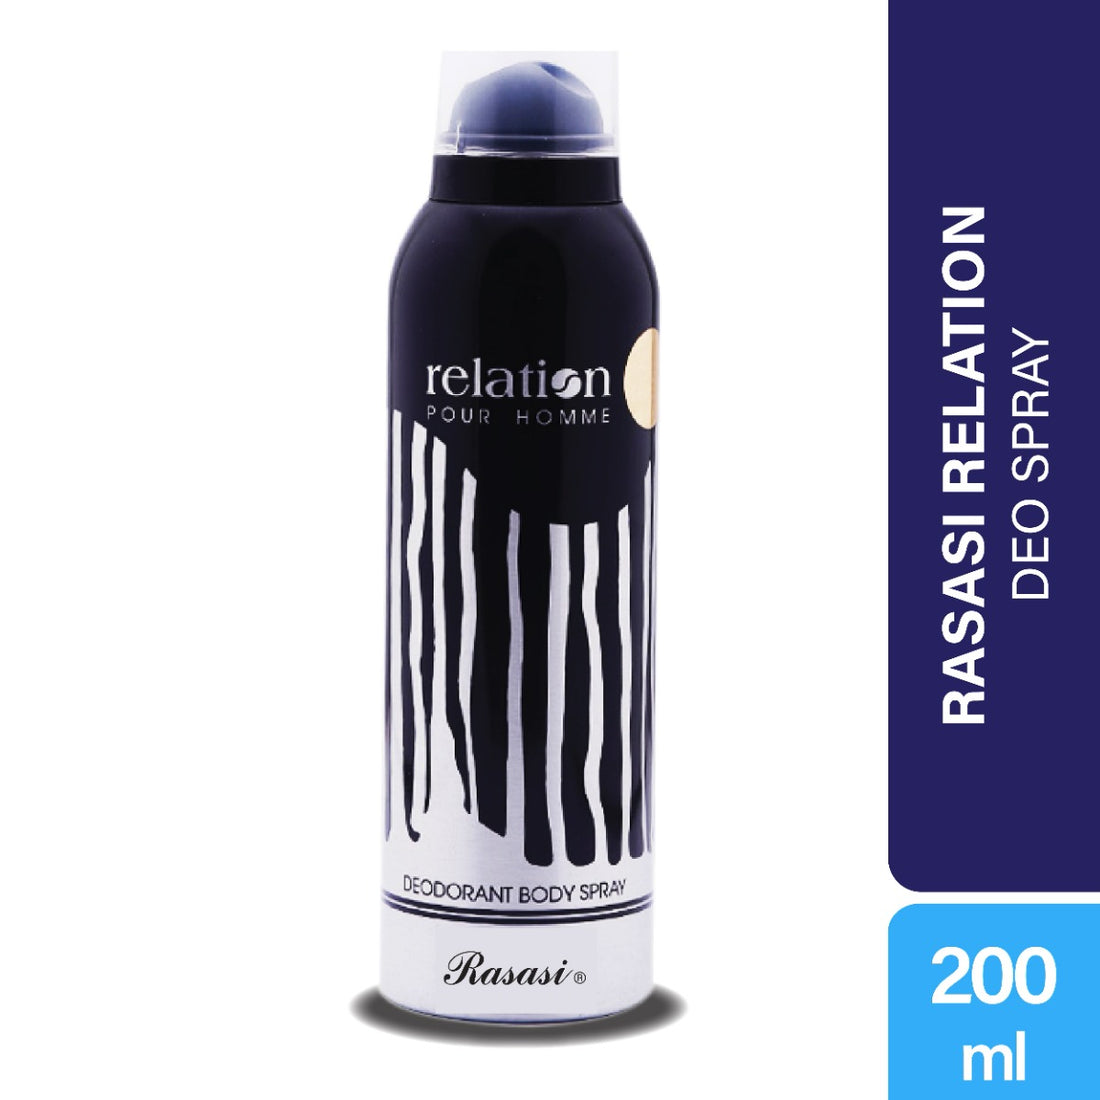 Rasasi Relation Pour Homme Deodorant Spray (200ml)